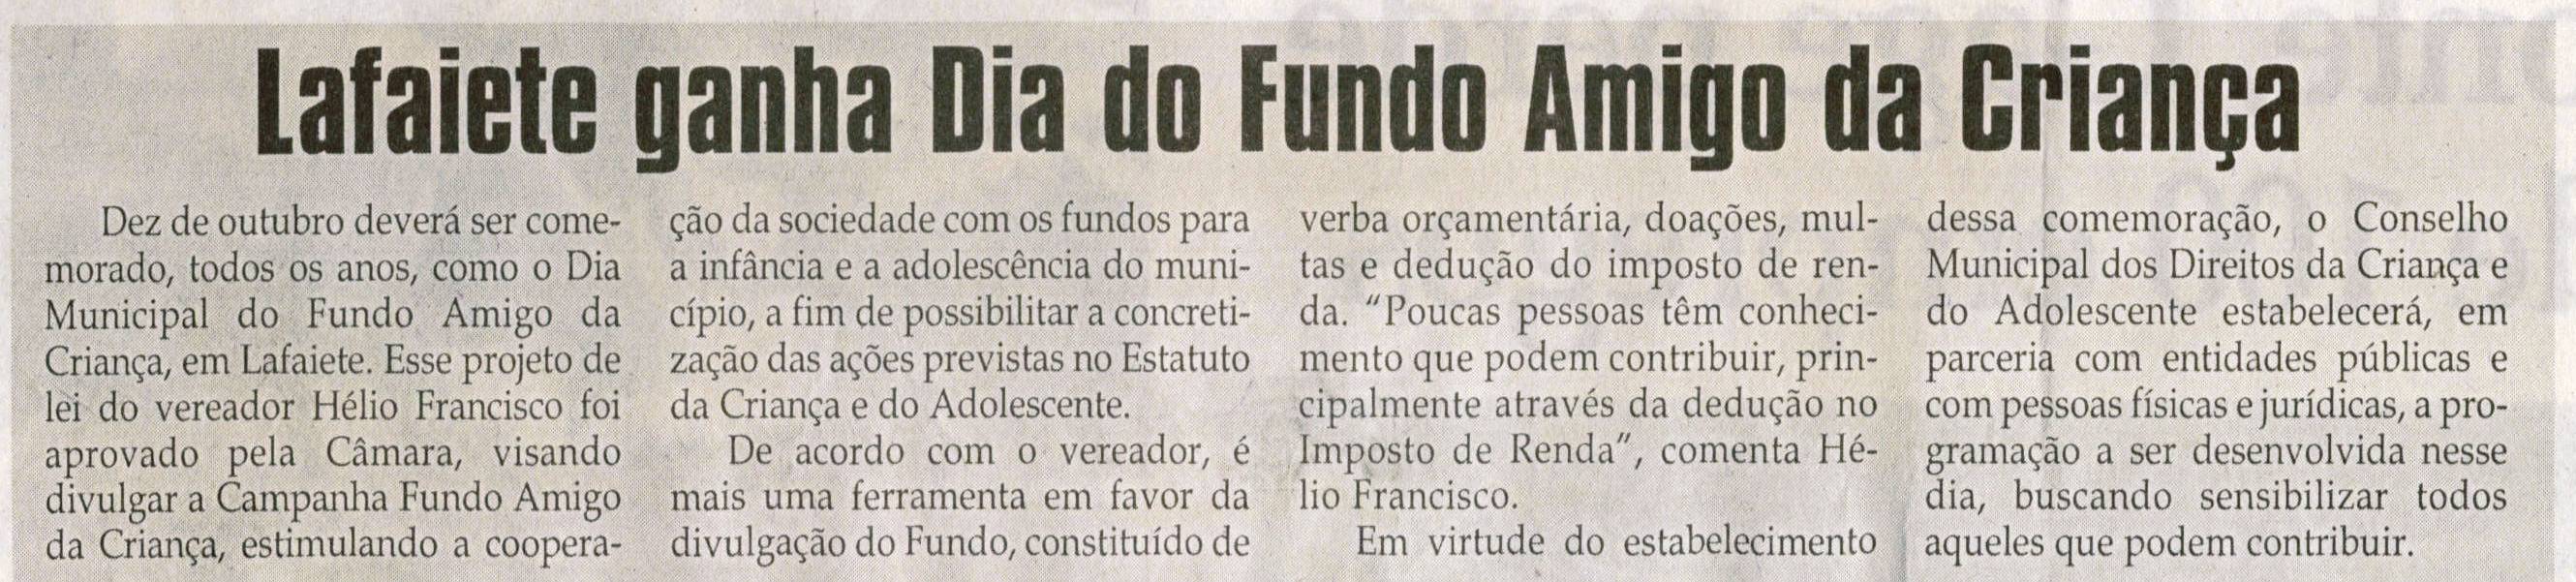 Lafaiete ganha Dia do Fundo Amigo da Criança. Jornal Correio da Cidade, Conselheiro Lafaiete, 14 mar. 2009, p. 02.